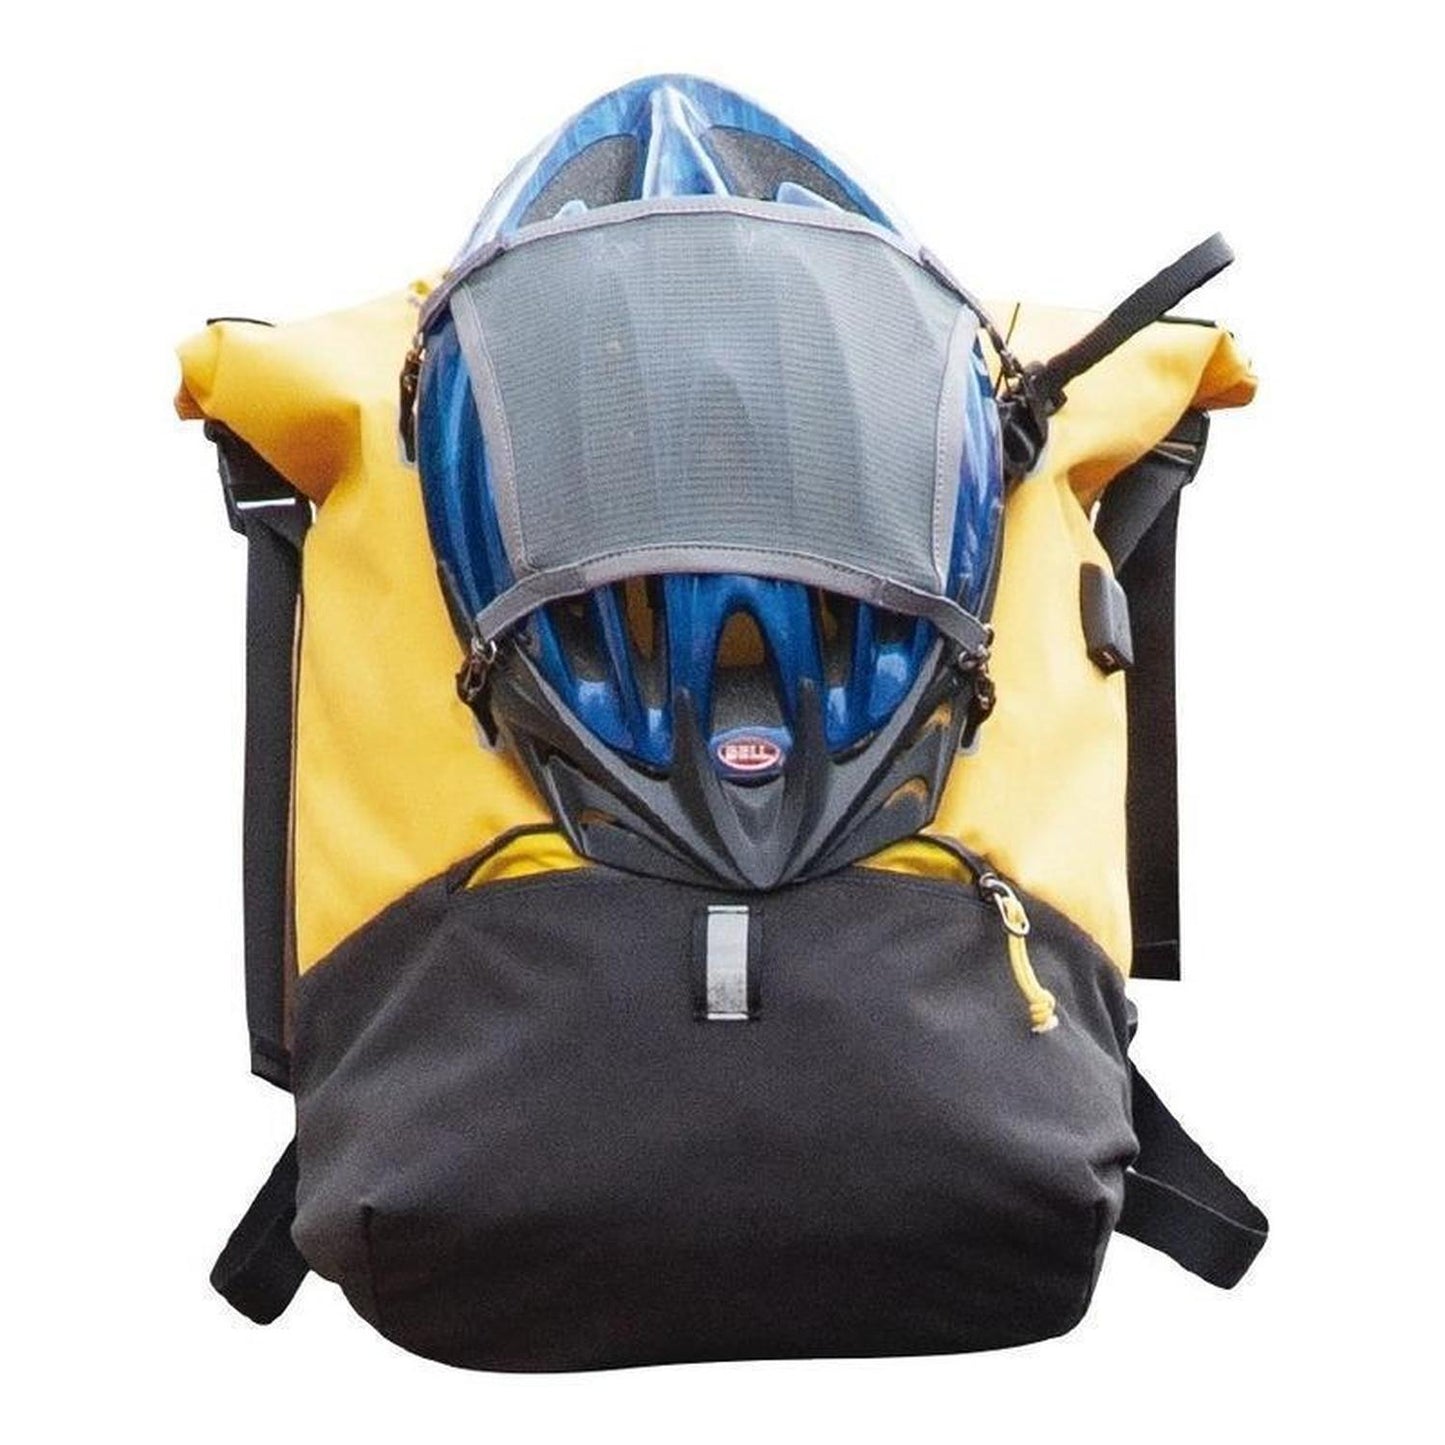 Mochila backpack Skypeak para Ciclista urbano de 15,6",tamaño Grande URB-115YL